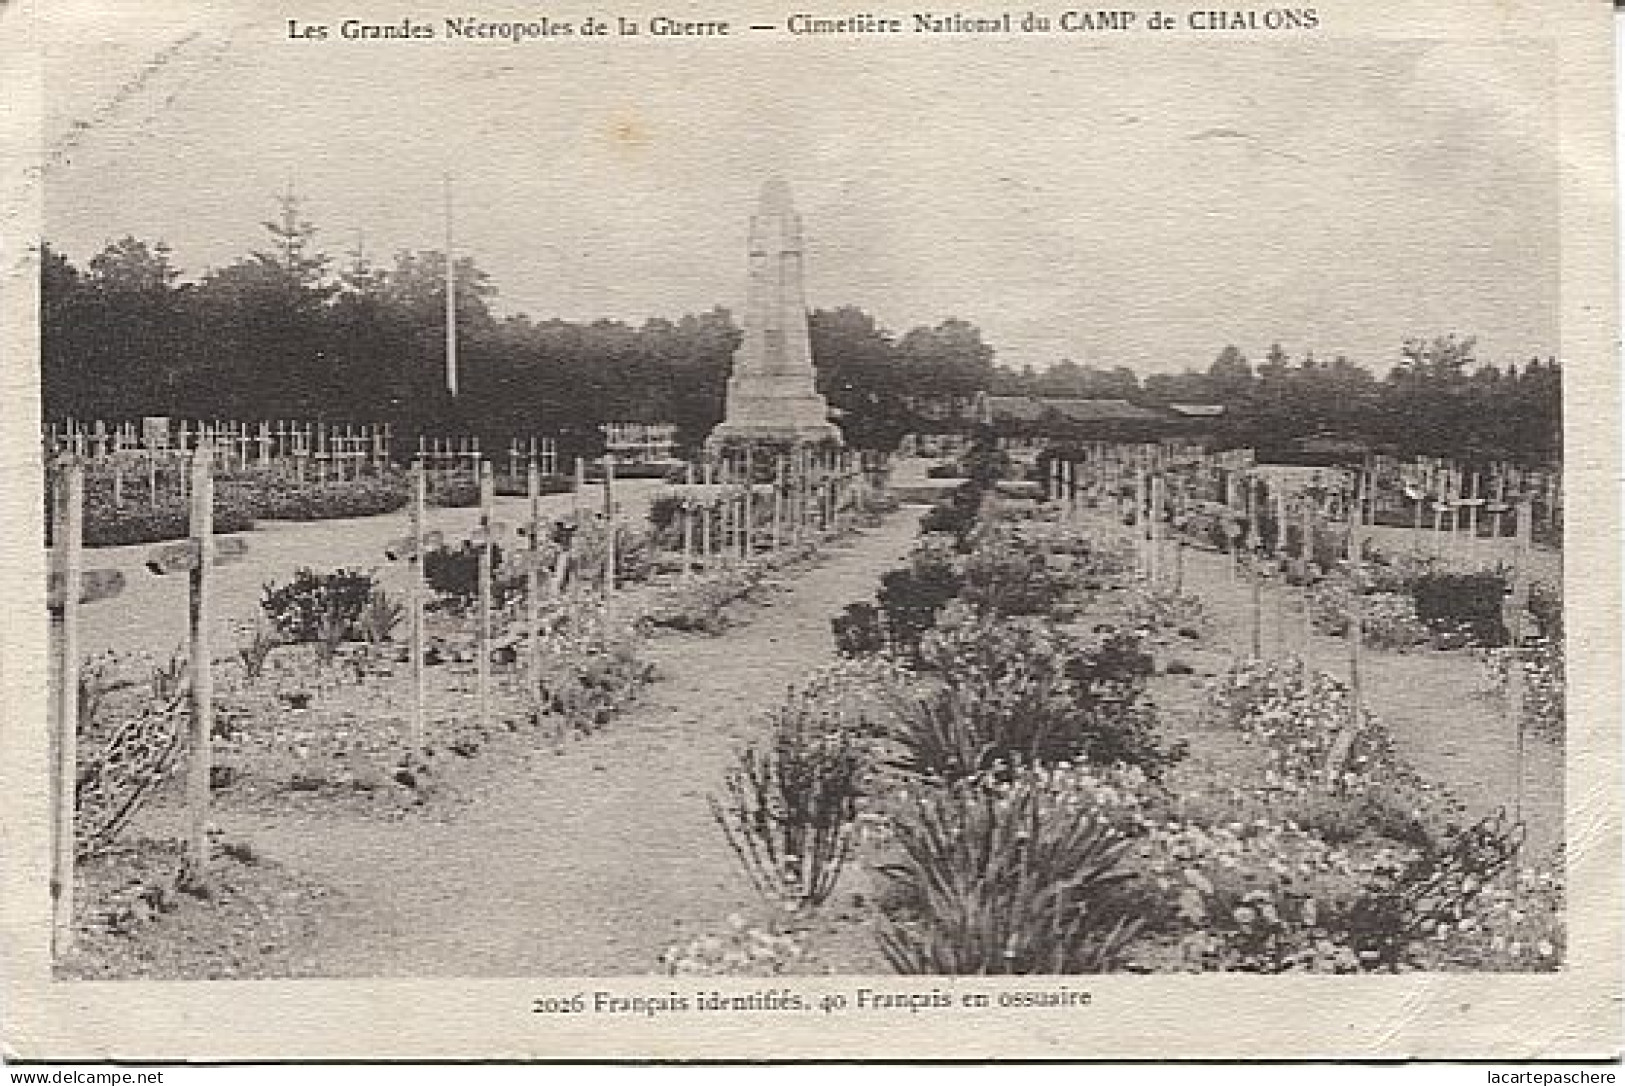 X124864 MARNE CAMP DE CHALONS MOURMELON CIMETIERE NATIONAL 2026 FRANCAIS IDENTIFIES 40 FRANCAIS EN OSSUAIRE WW1 WWI - Camp De Châlons - Mourmelon